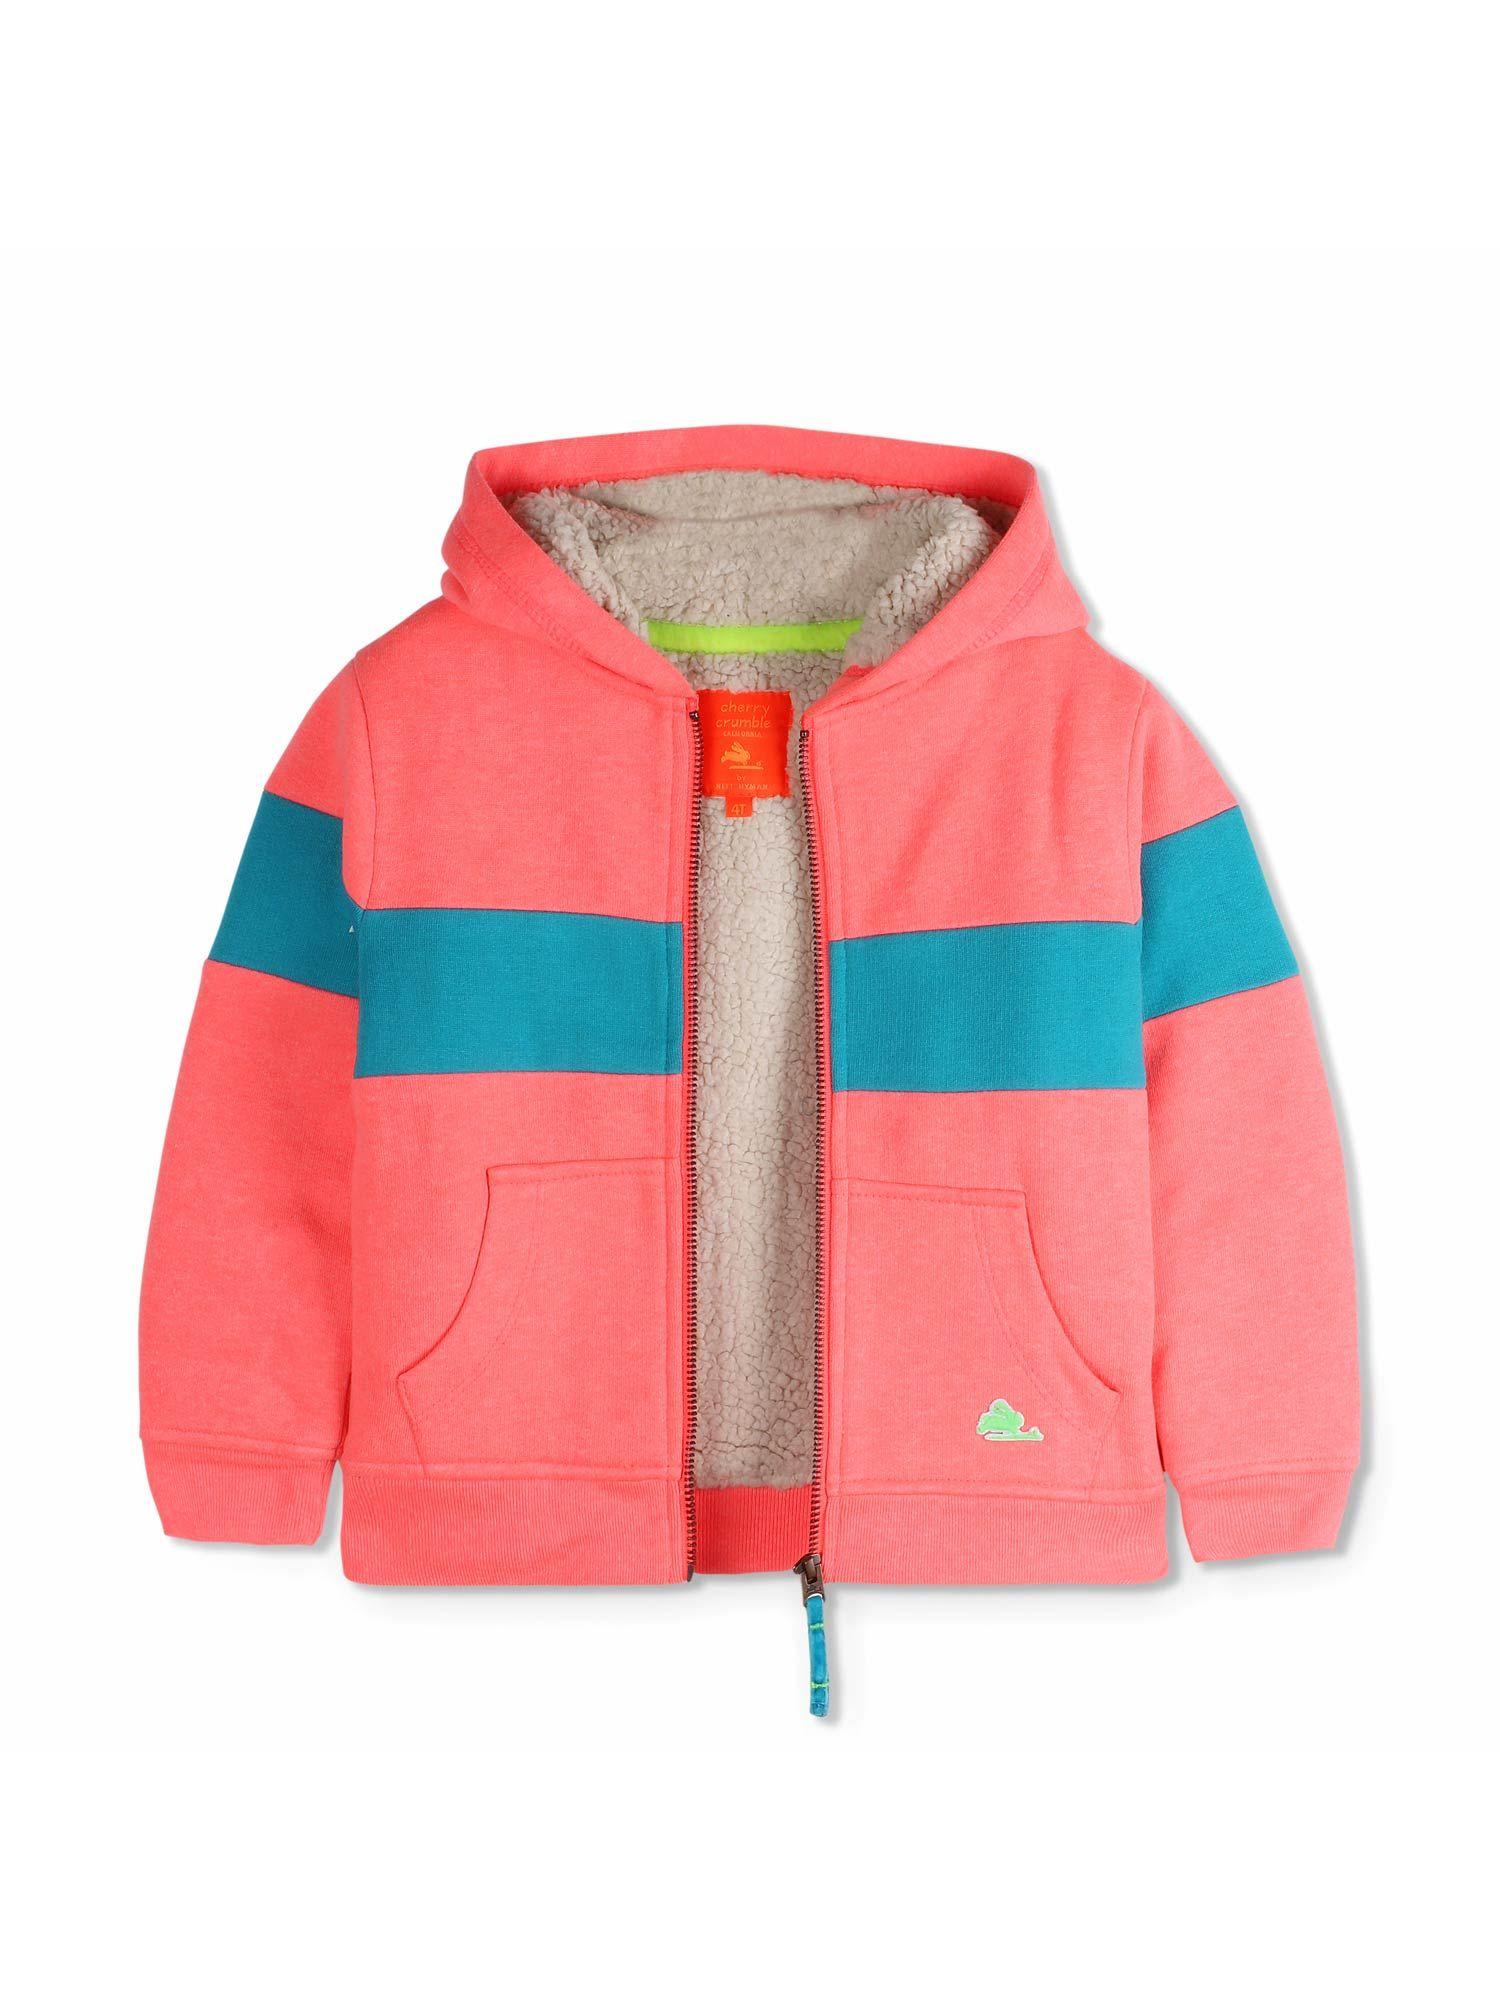 boys-&-girls-bright-peach-snug-sherpa-hooded-sweatshirt